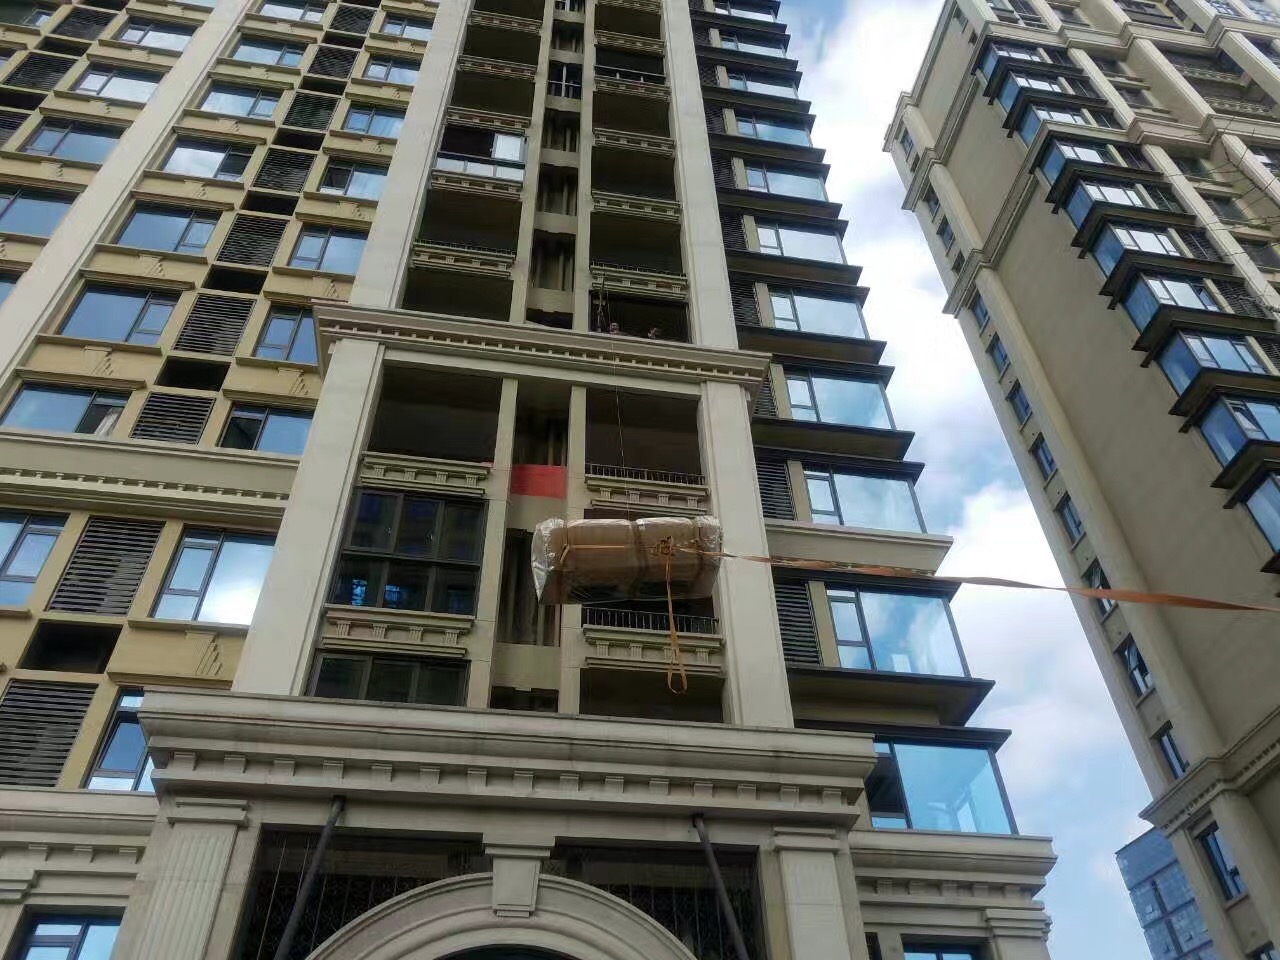 上海吊家具 上海大玻璃吊上楼 迁厂搬家 上海吊沙发公司7